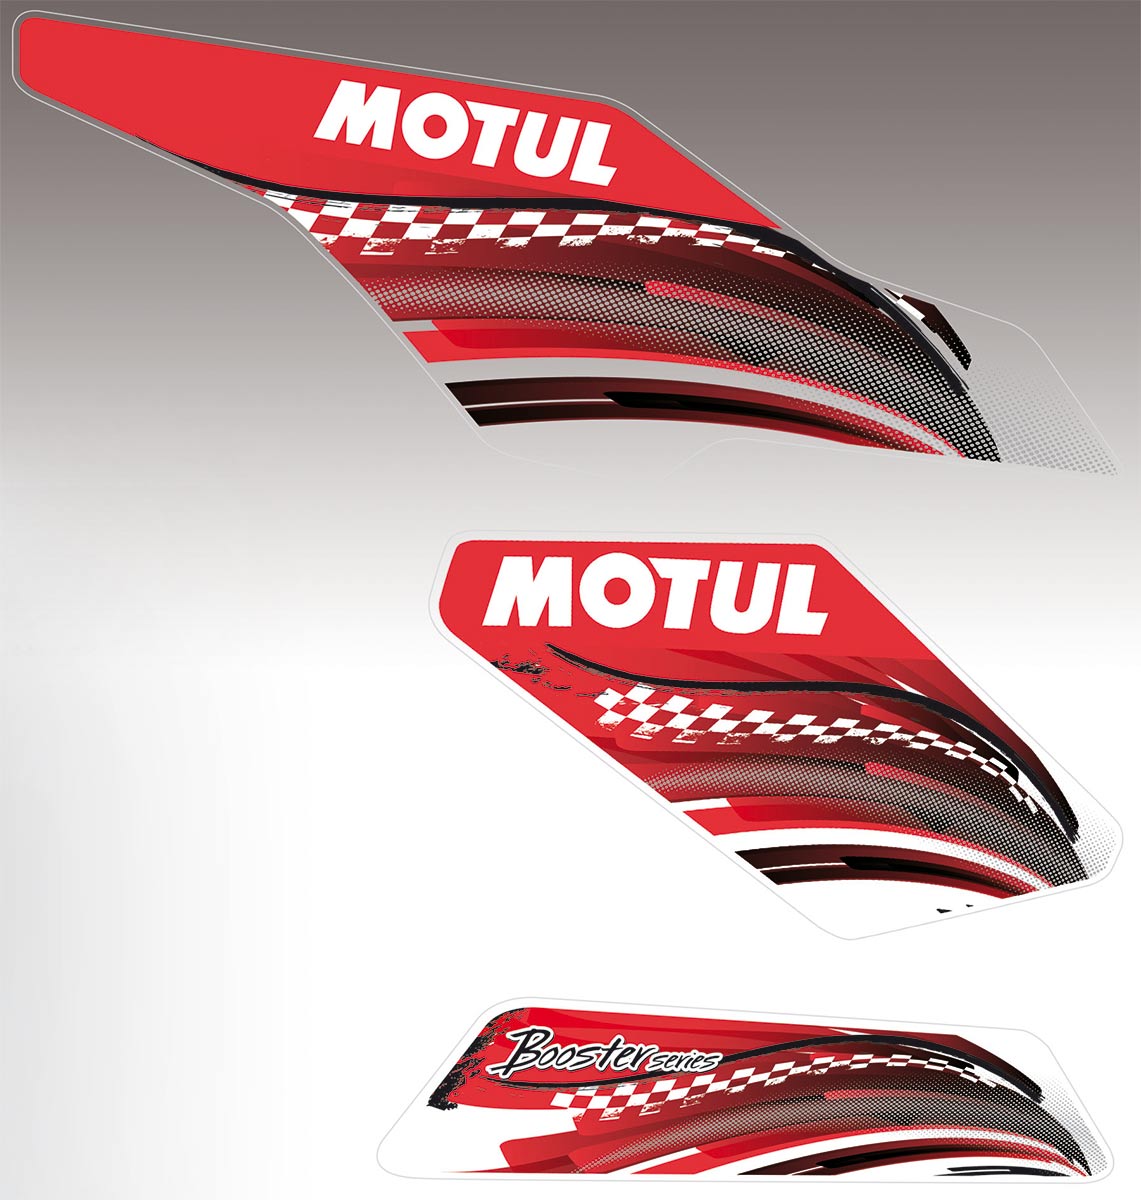 Le kit autocollant pour Booster se compose de 6 stickers aux couleurs de Motul